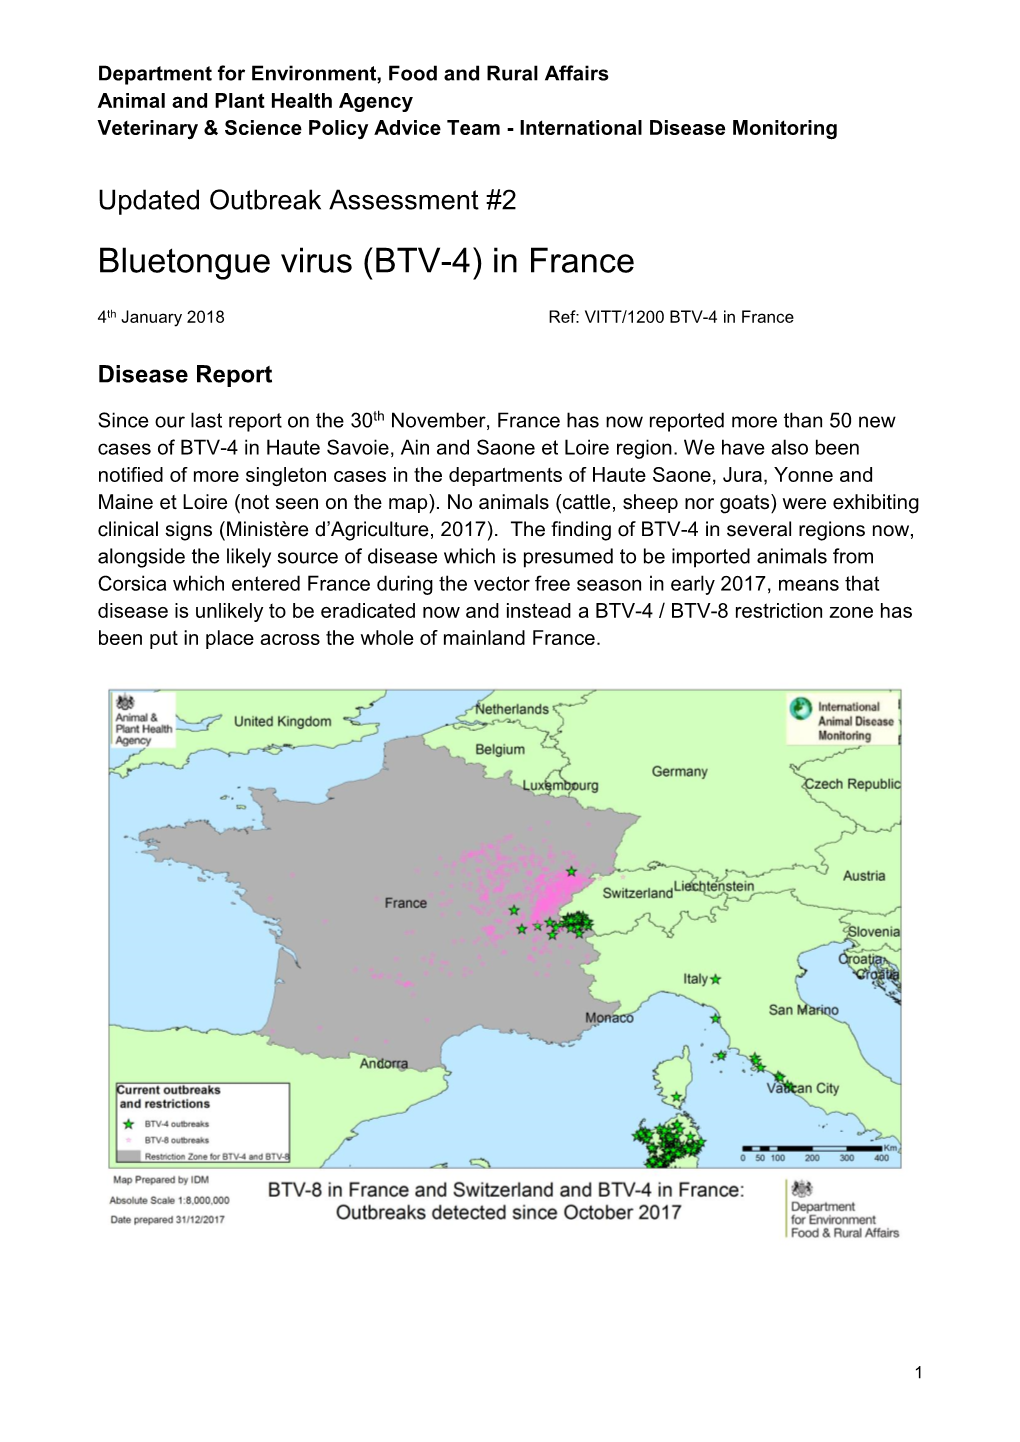 Bluetongue Virus (BTV-4) in France